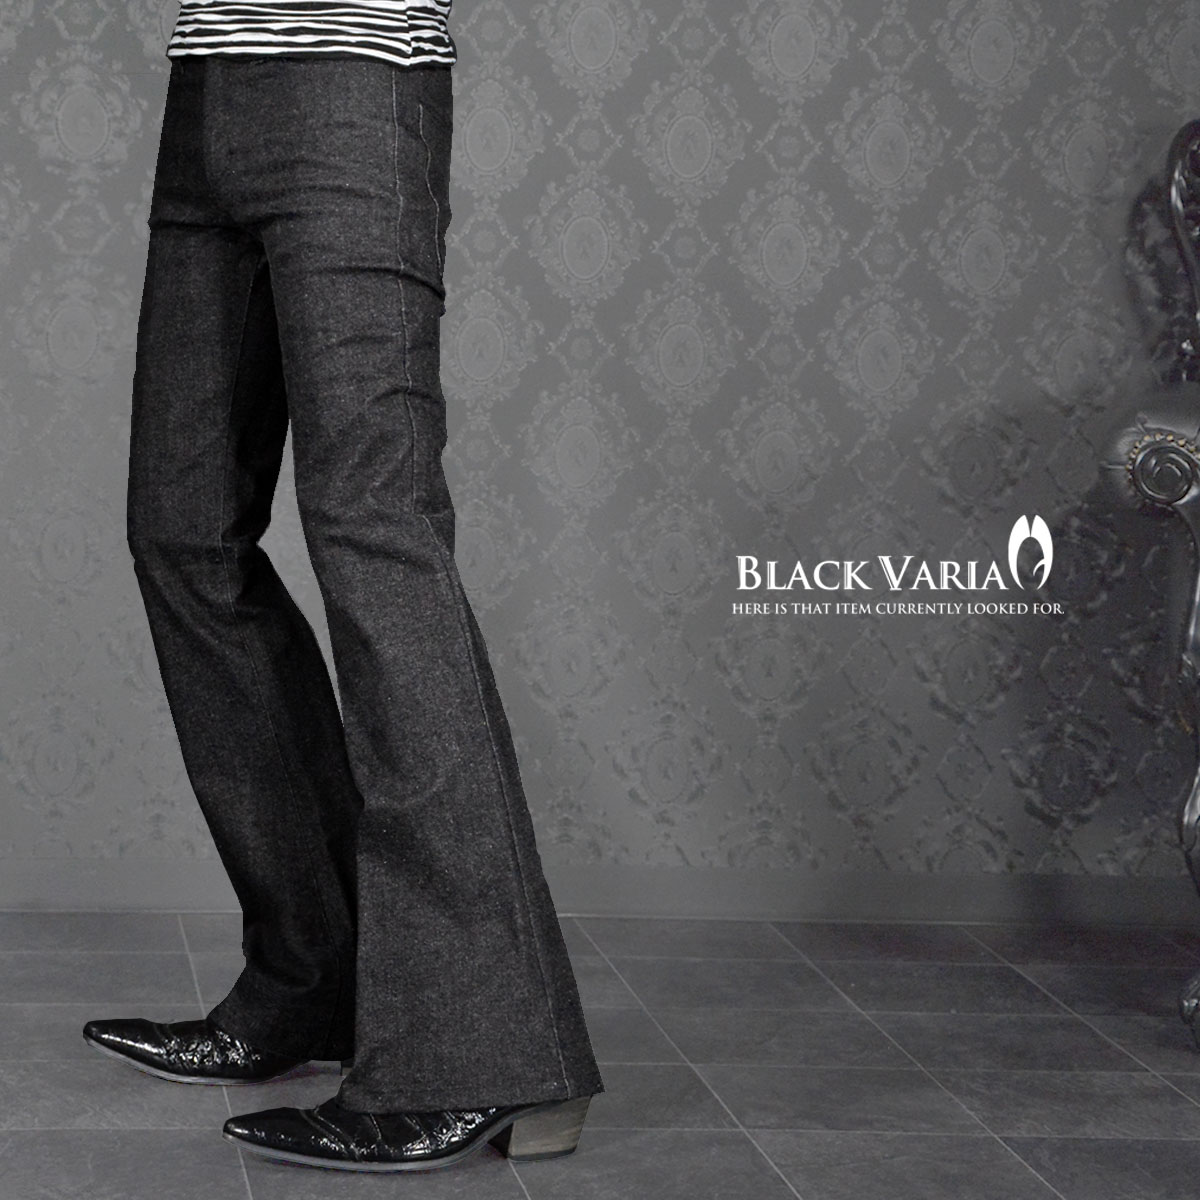 【楽天市場】ベルボトム ブーツカット フレア デニム ジーパン ストレッチ ボトムス パンツ メンズ mens ファッション（ブラック黒